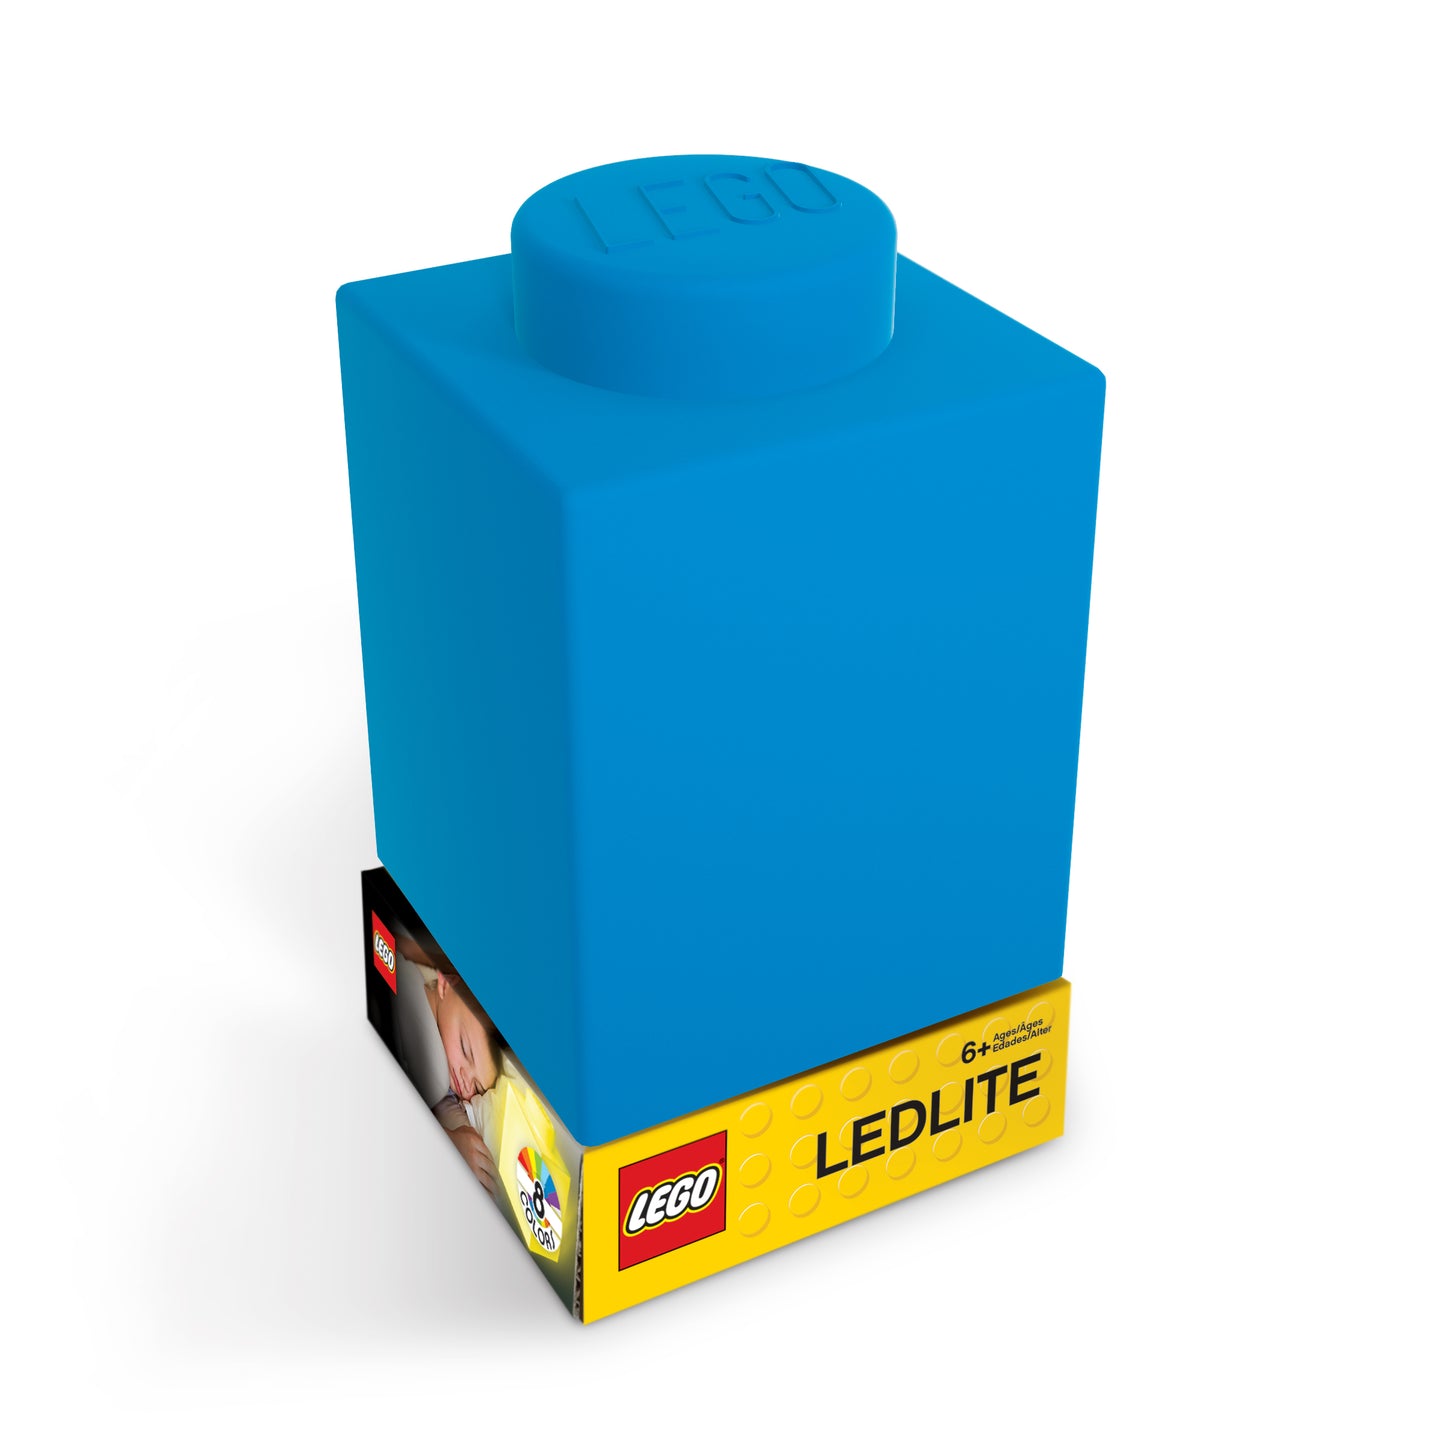 IQ レゴ アイコニック 1×1のレゴブロック形 柔らかシリコン タッチ式 ランプ 青 (LP37)